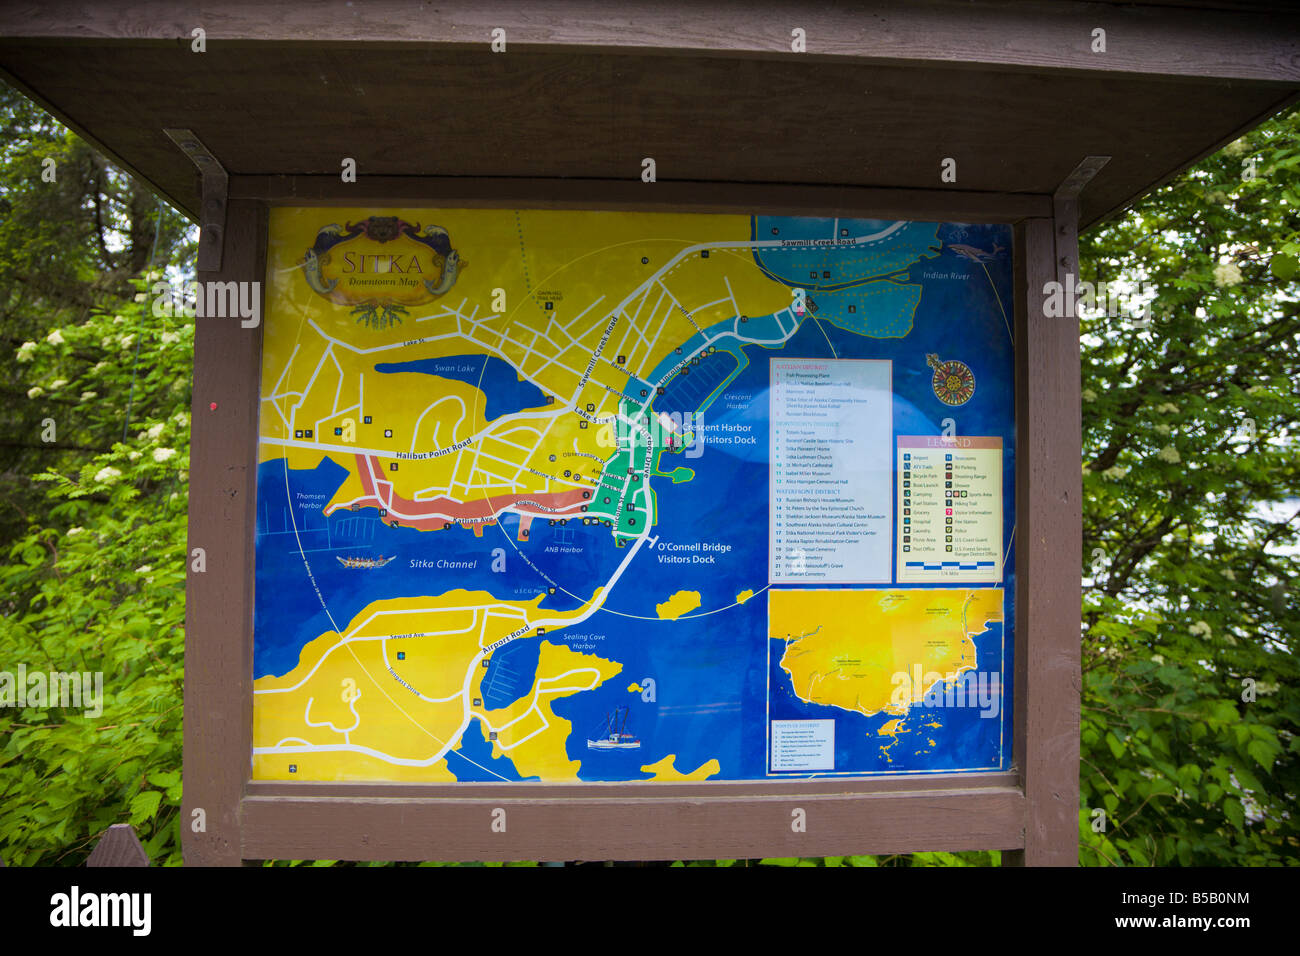 Mappa ed elenco delle città di Sitka, Alaska postato su strada per i turisti per trovare il loro senso intorno alla città Foto Stock